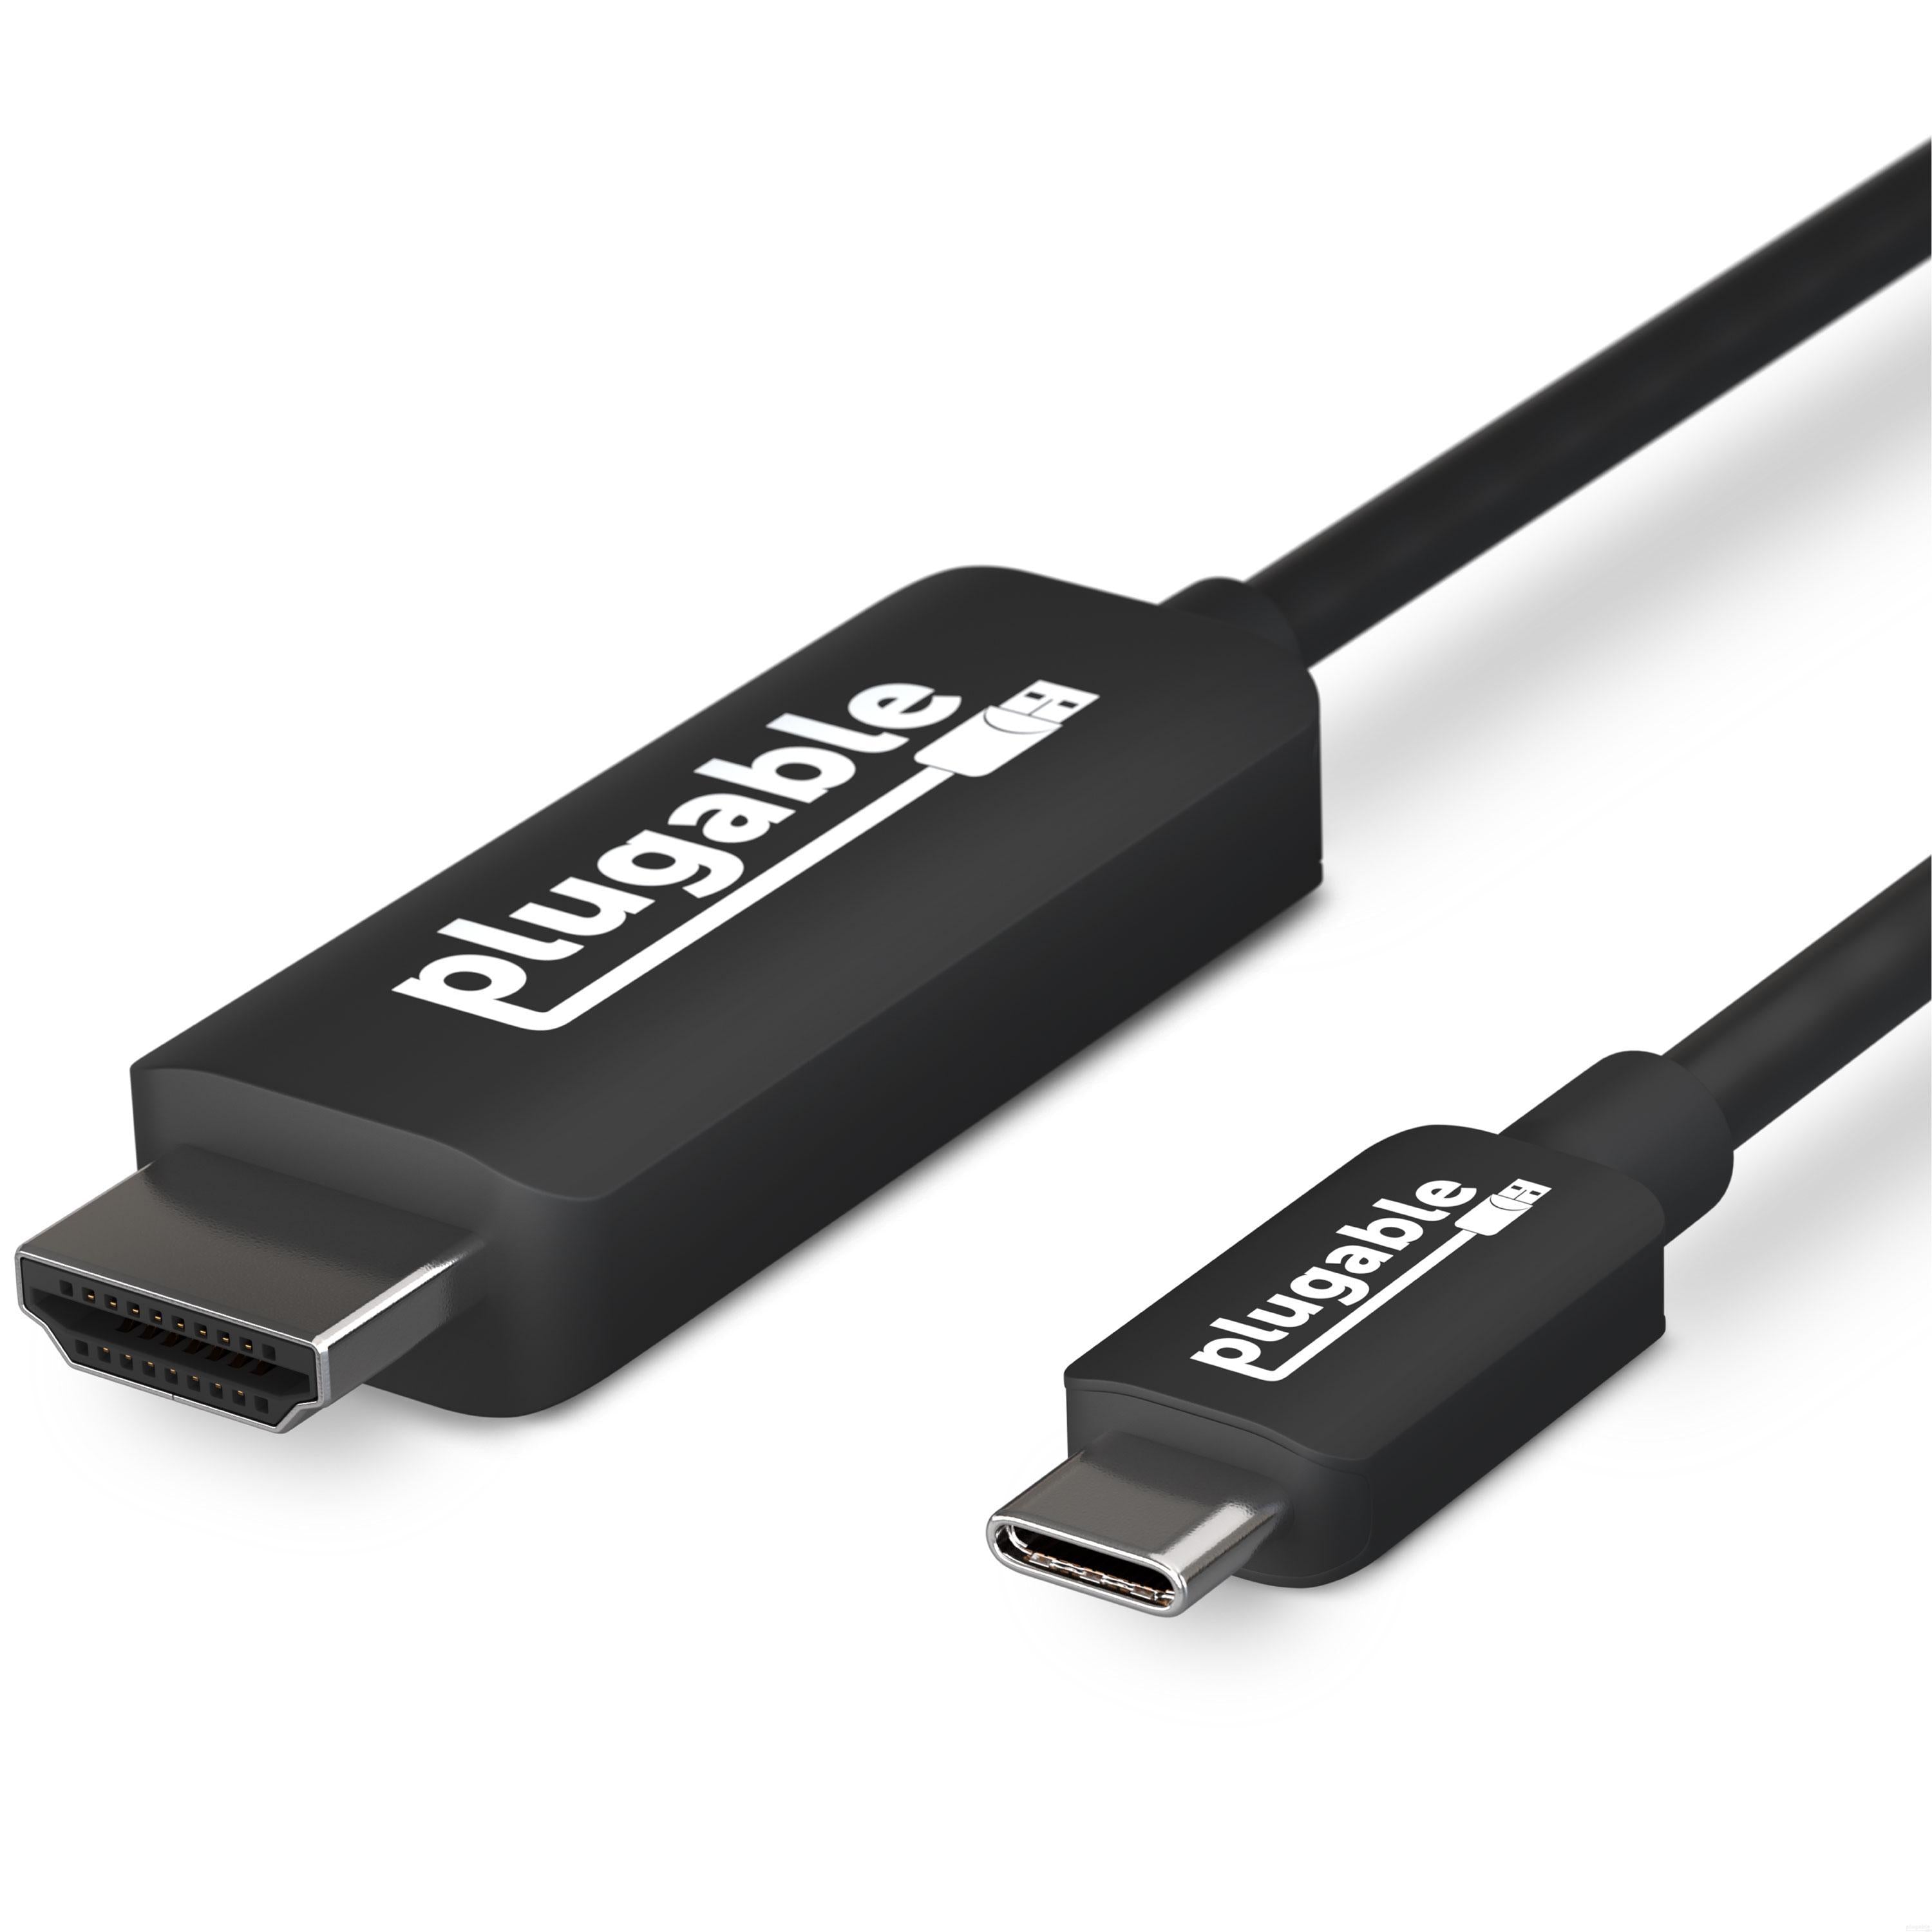 Plugable USB 3.1 Type-C to HDMI 2.0 – Plugable